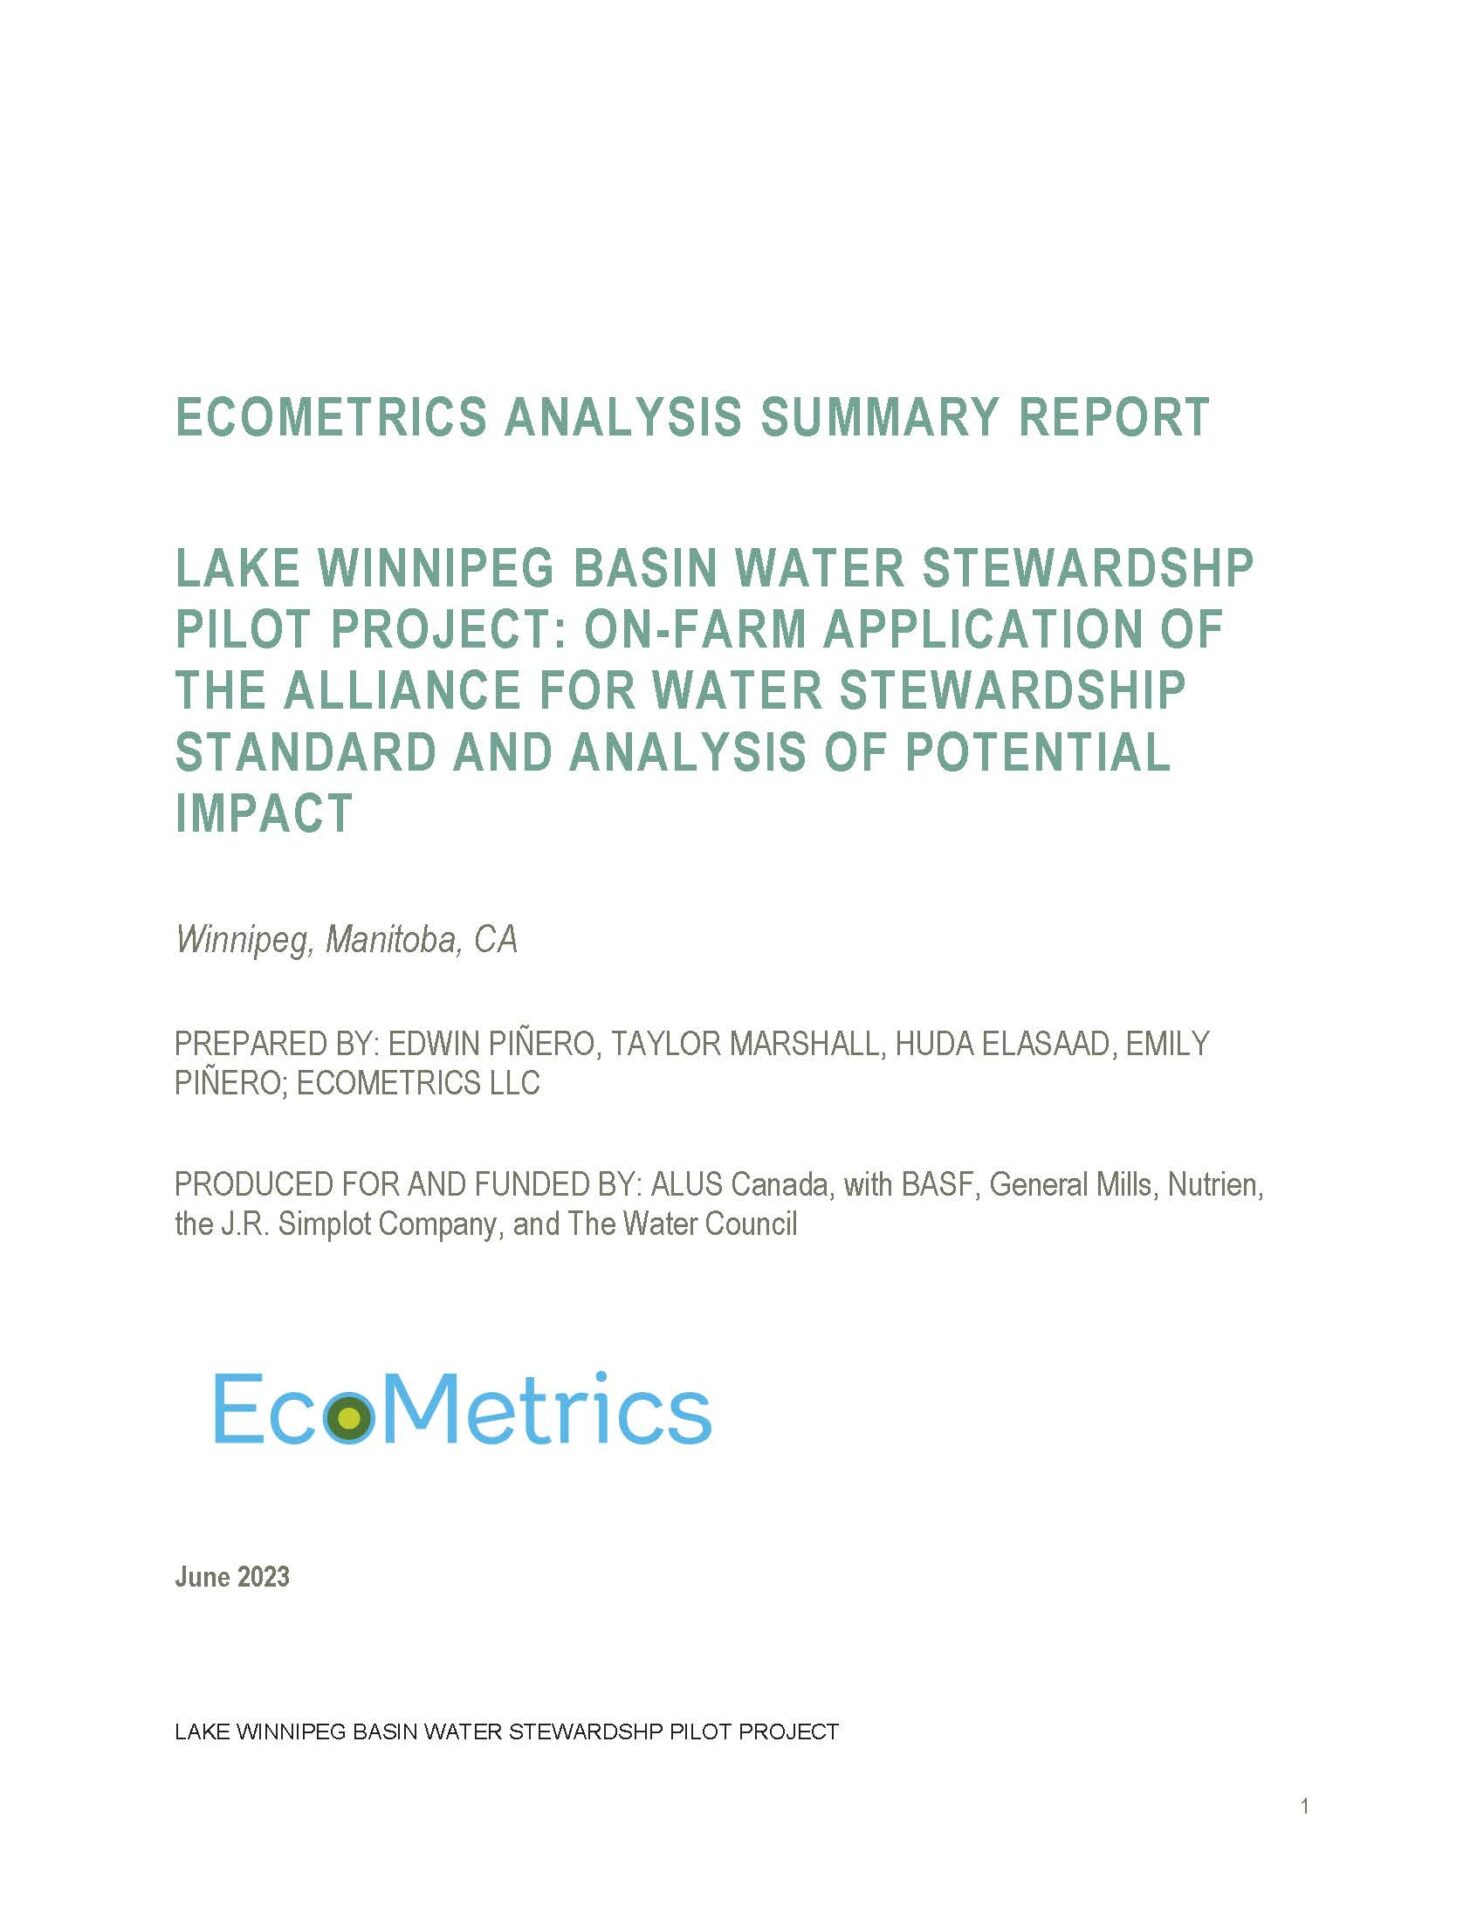 Ecometrics Analysis Summary Report Lake Winnipeg Water Stewardship Pilot Project Cover